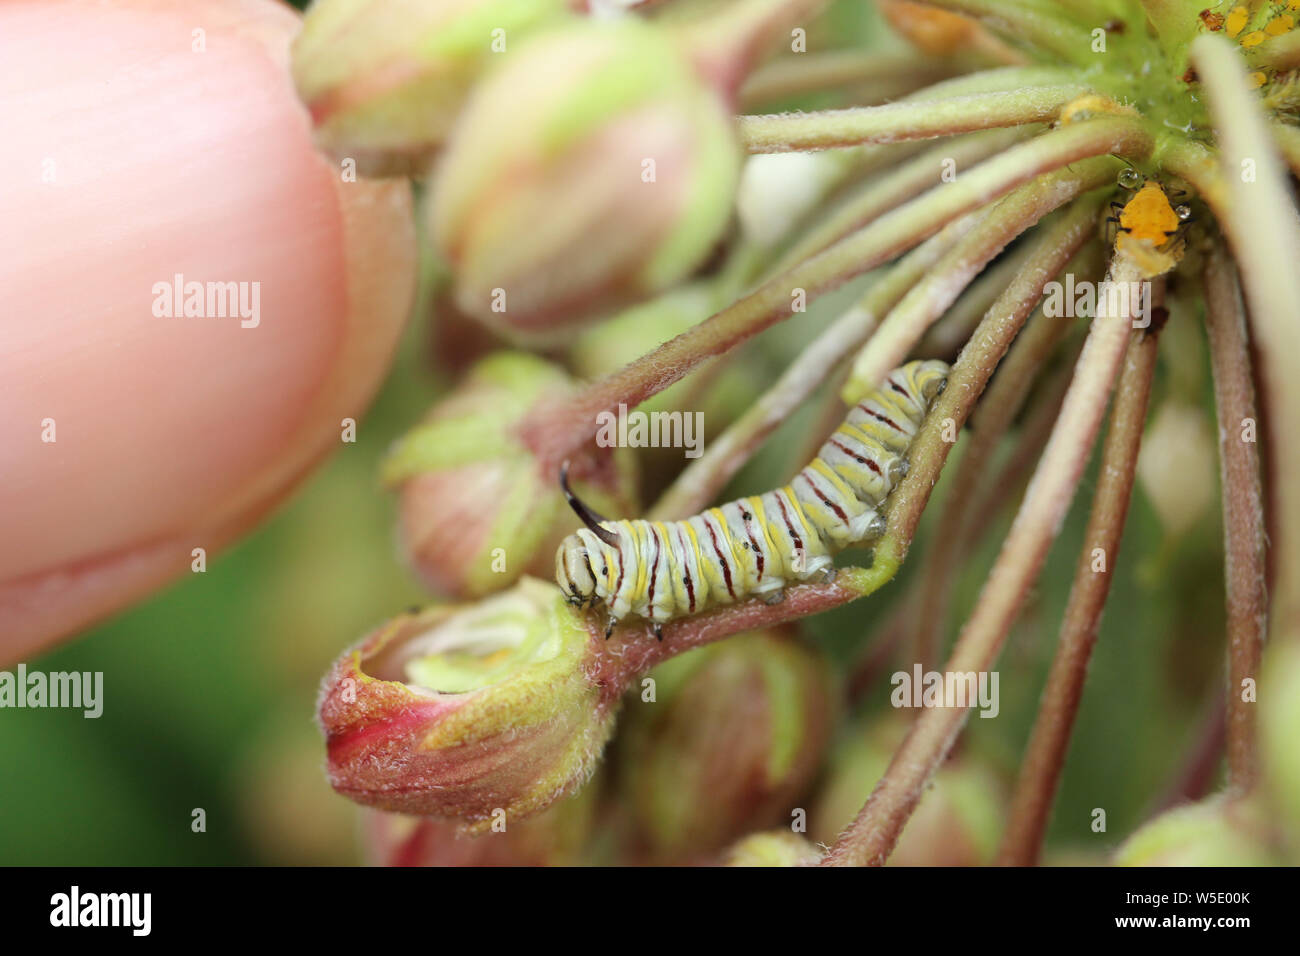 Una fame instar seconda farfalla monarca caterpillar mangiare alcuni comuni milkweed germoglio di fiore. Foto Stock